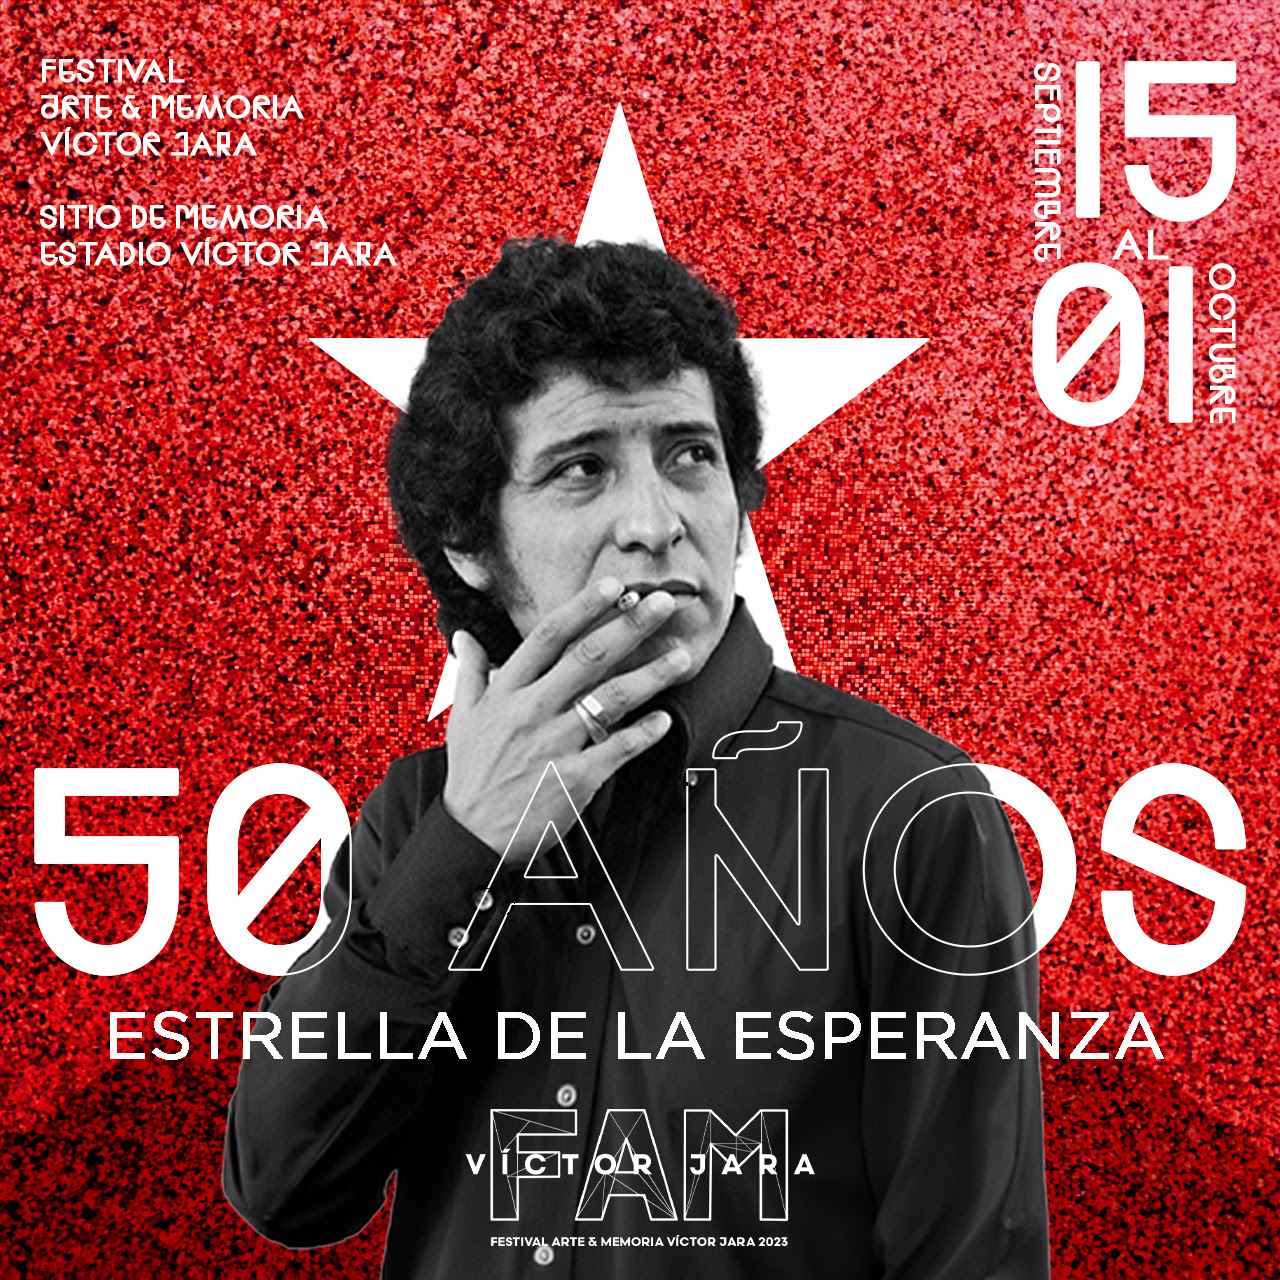 Festival de Arte y Memoria Víctor Jara: La estrella de la esperanza continuará siendo nuestra